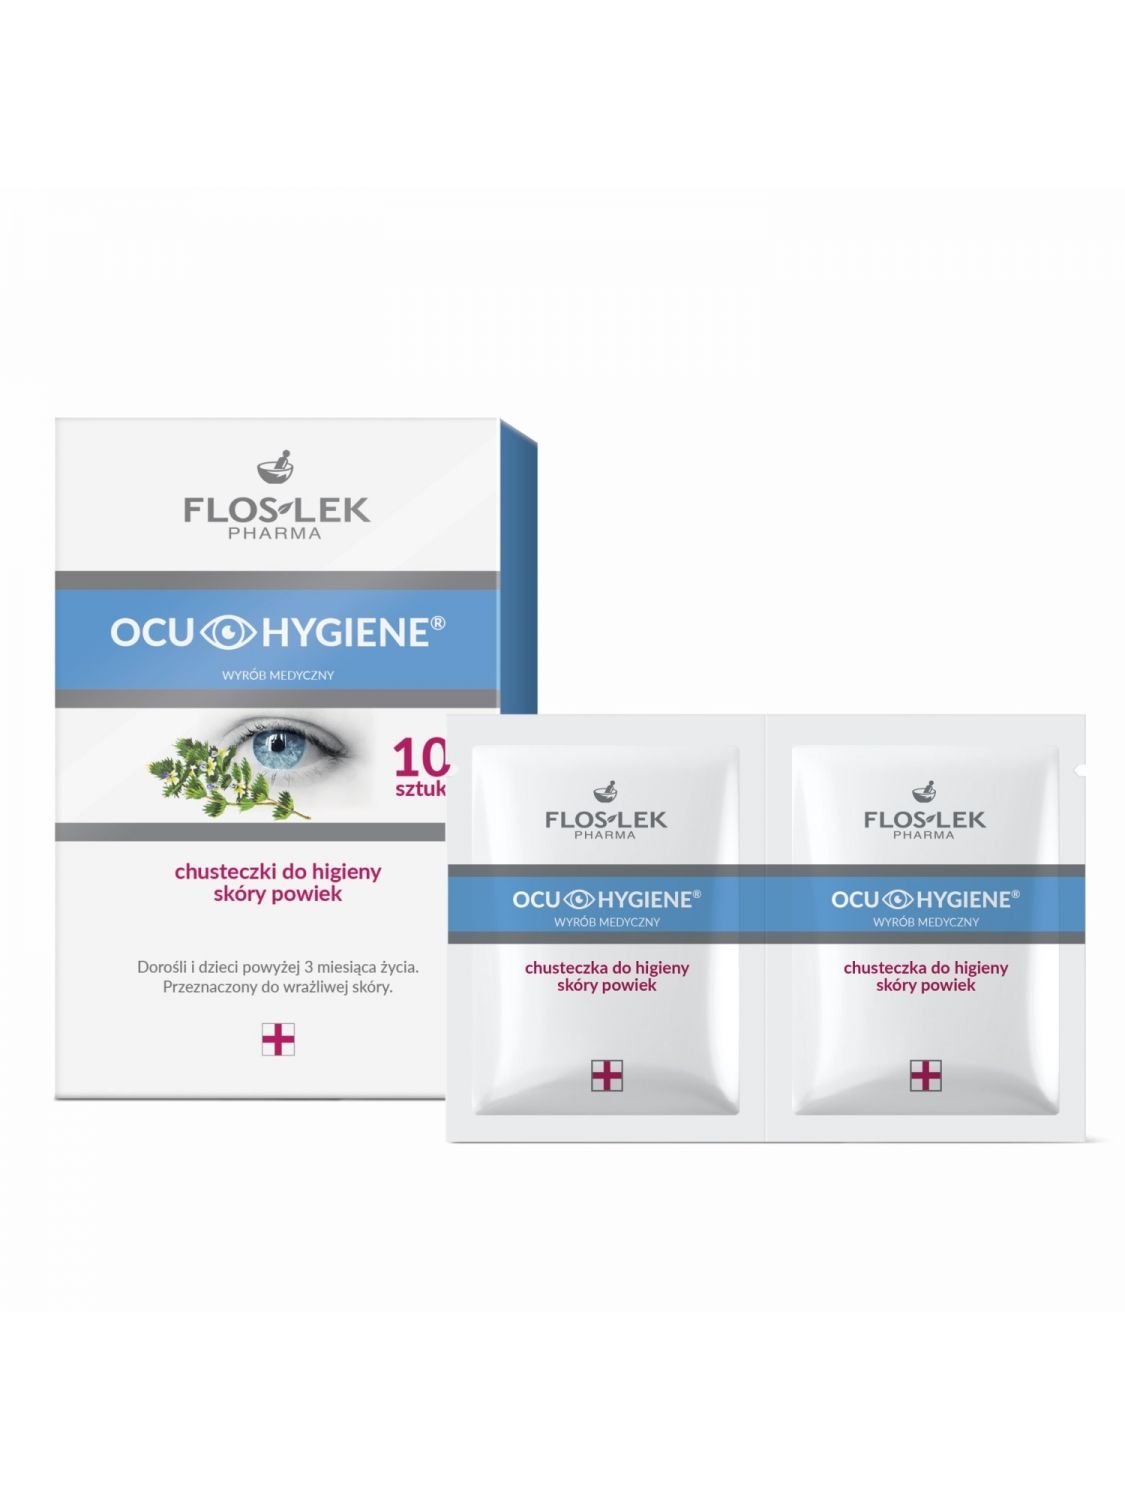 OCU HYGIENE™ Augenlidhauttücher 10 Stück Medizinprodukt - Floslek